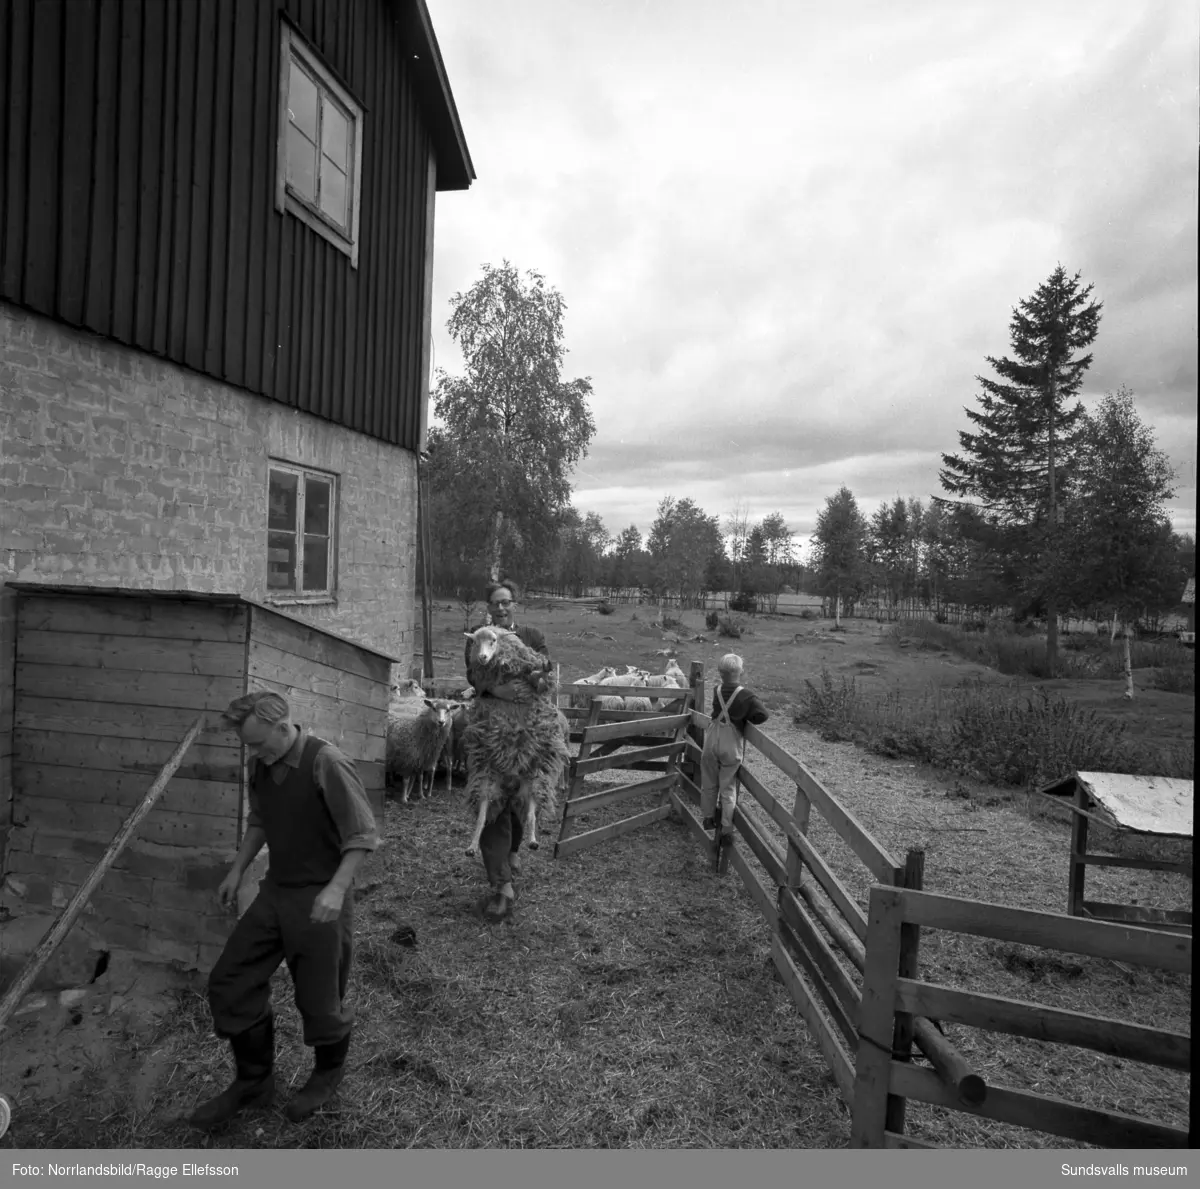 Folkskollärare Gunnar Tjernbergs lantgård i Slätt, Ovansjö, Njurunda. En flock får hanteras, bland annat så vägs en tacka, och här fanns även häst och hund. En av bilderna visar Tjernbergs yrkesroll som lärare i klassrummet och på en annan är han i skogen med yxan i högsta hugg.